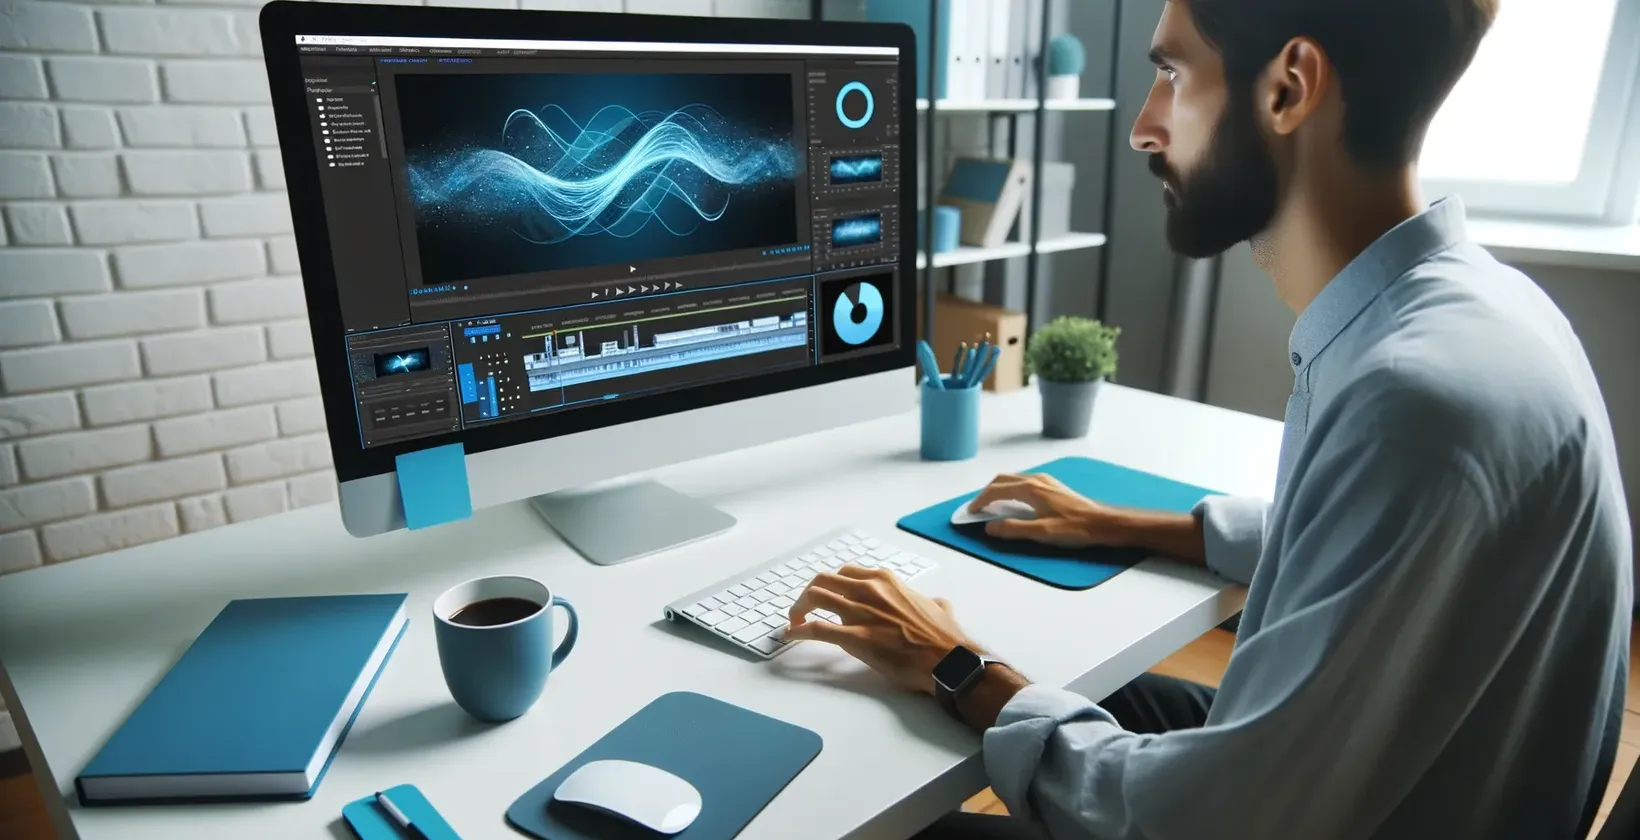 नीली स्क्रीन के साथ कंप्यूटर पर टाइप करने वाला आदमी, iMovie उपशीर्षक का उपयोग करता है